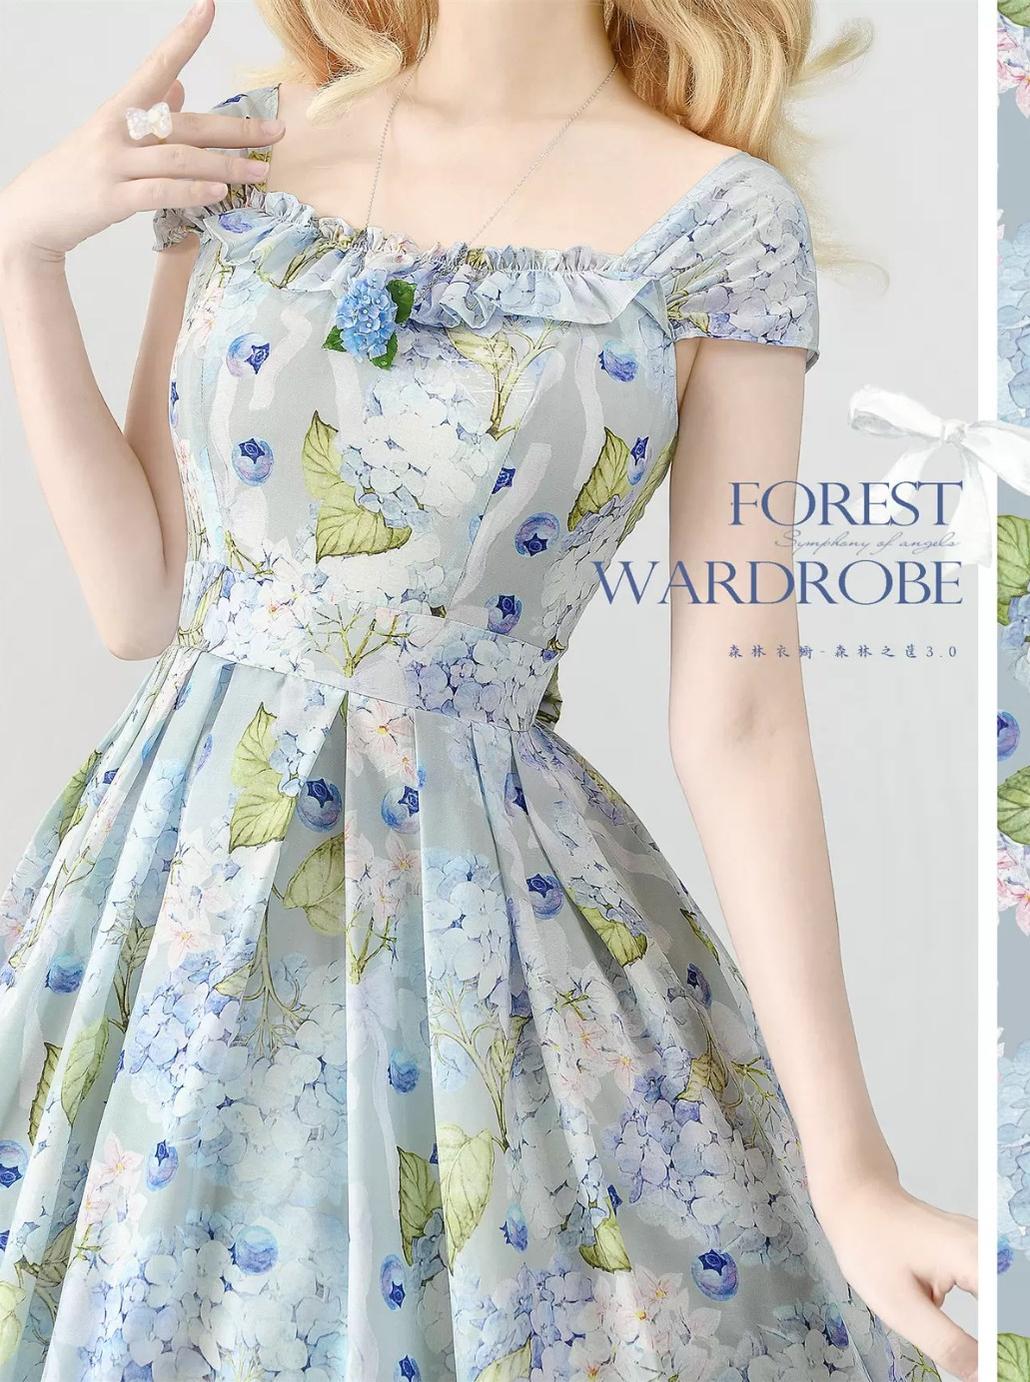 Forest Wardrobe~Forest Basket 3.0~Vintage Lolita JSK Dress Summer Thin Dress S blueberry hydrangea 